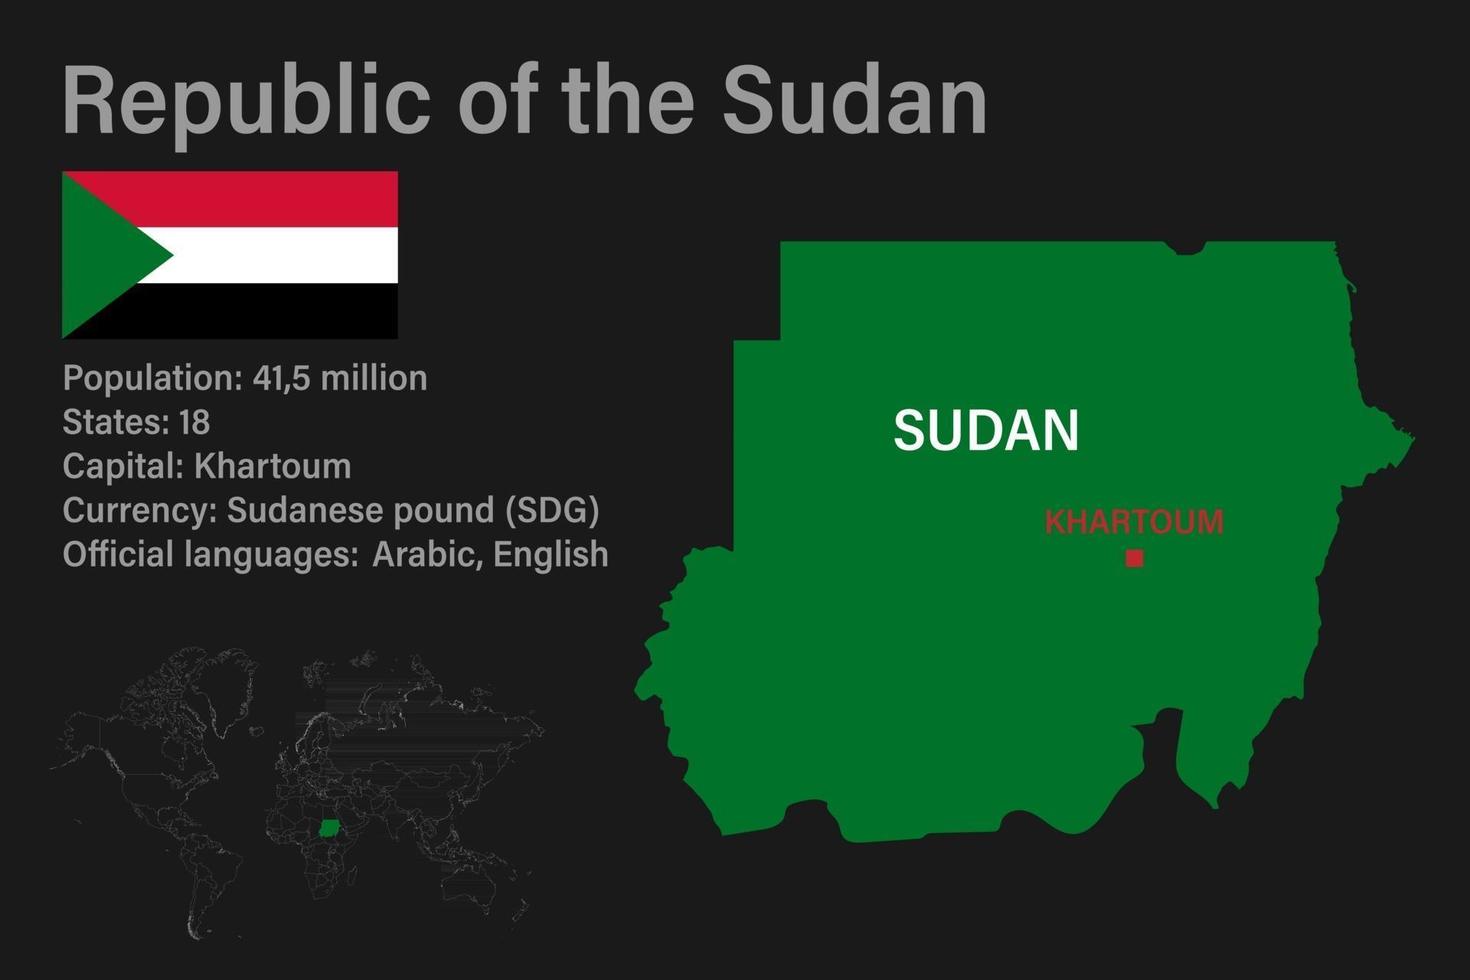 hochdetaillierte Sudankarte mit Flagge, Hauptstadt und kleiner Weltkarte vektor